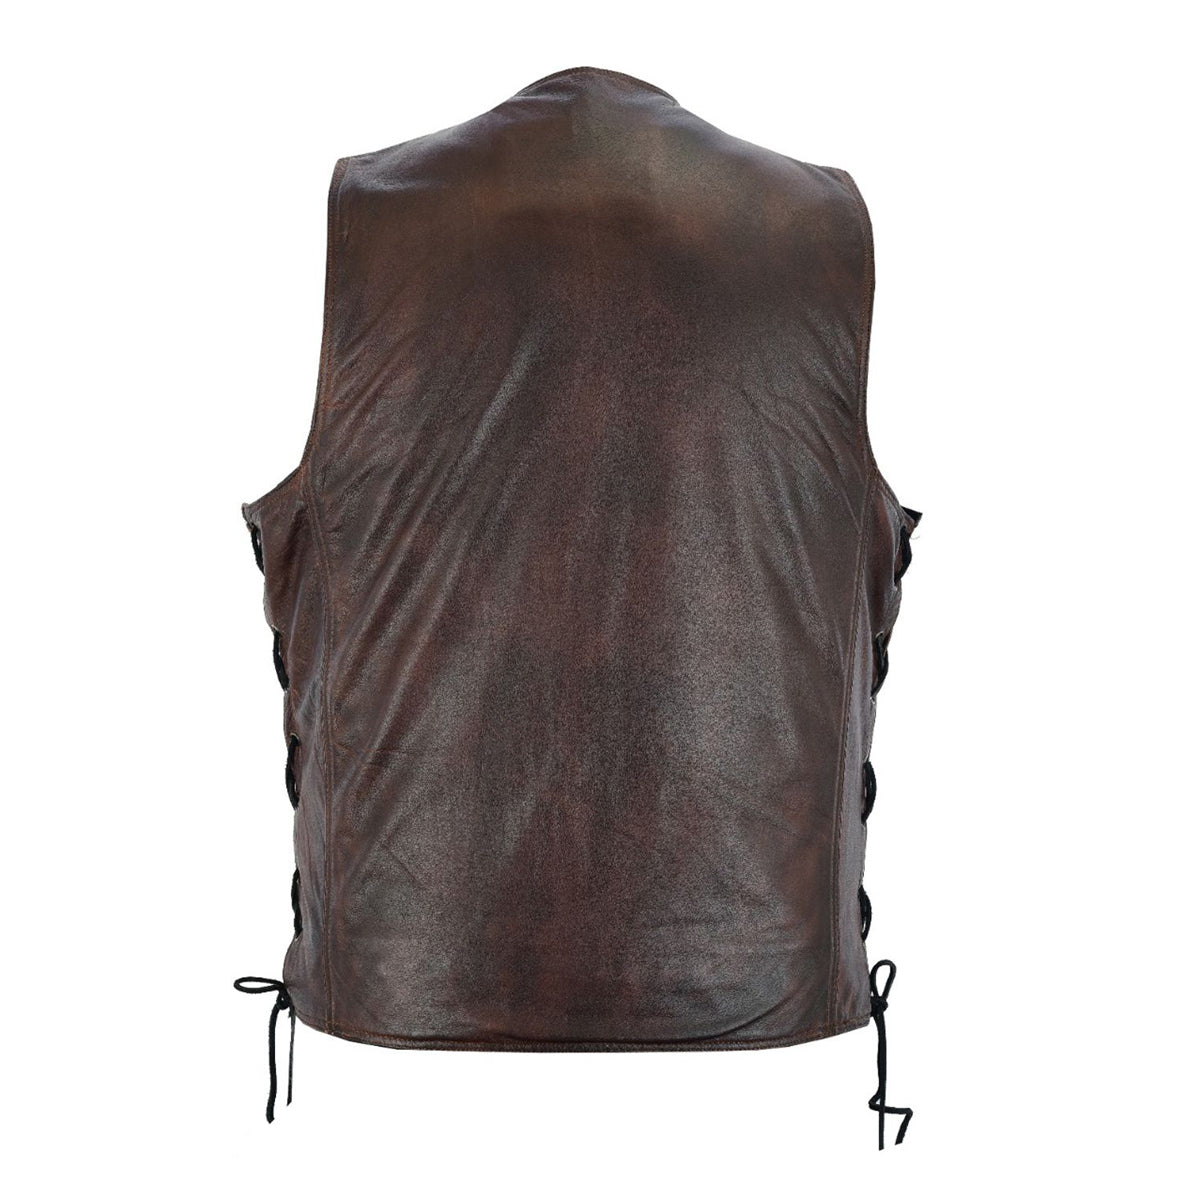 en Pocket Brown Premium Naked Cowhide Leather Riding Vest side laces & gun pocket